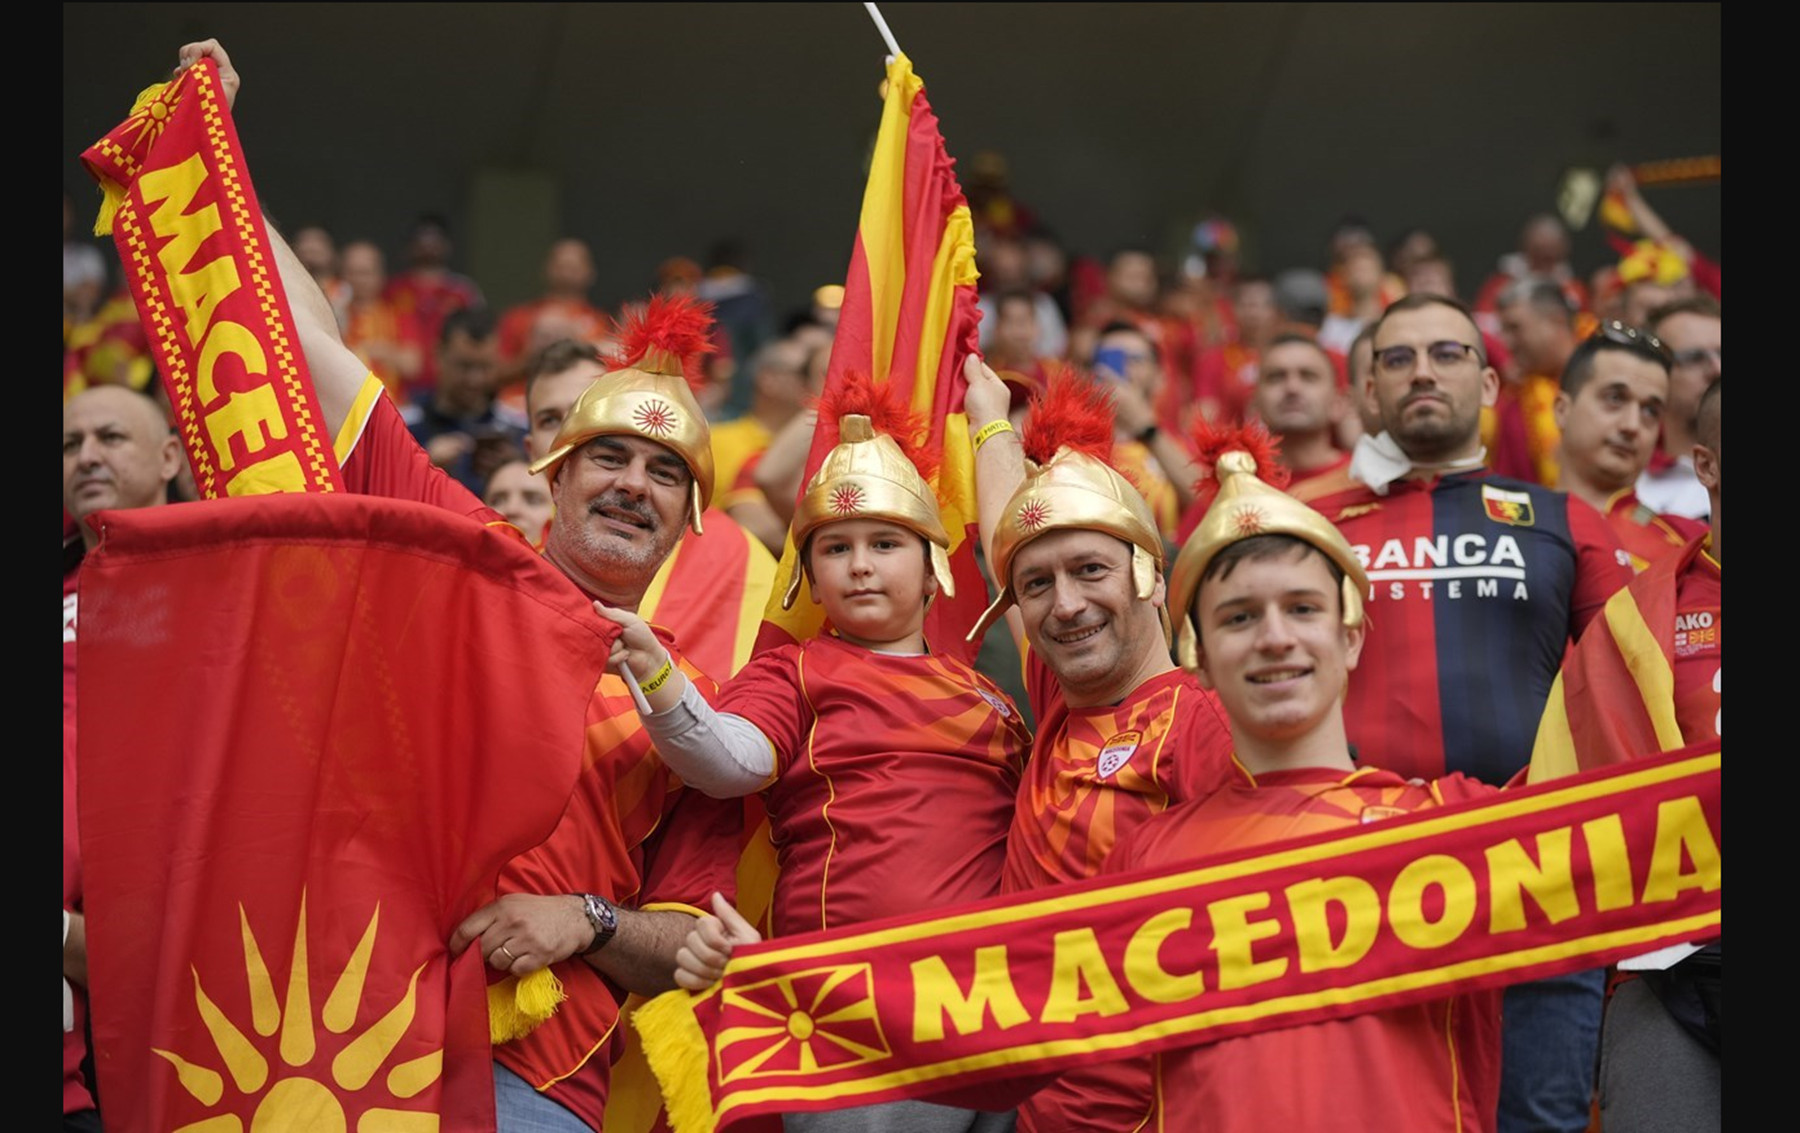 Σκόπια Euro: «Μακεδονία» και περικεφαλαίες στις εξέδρες!